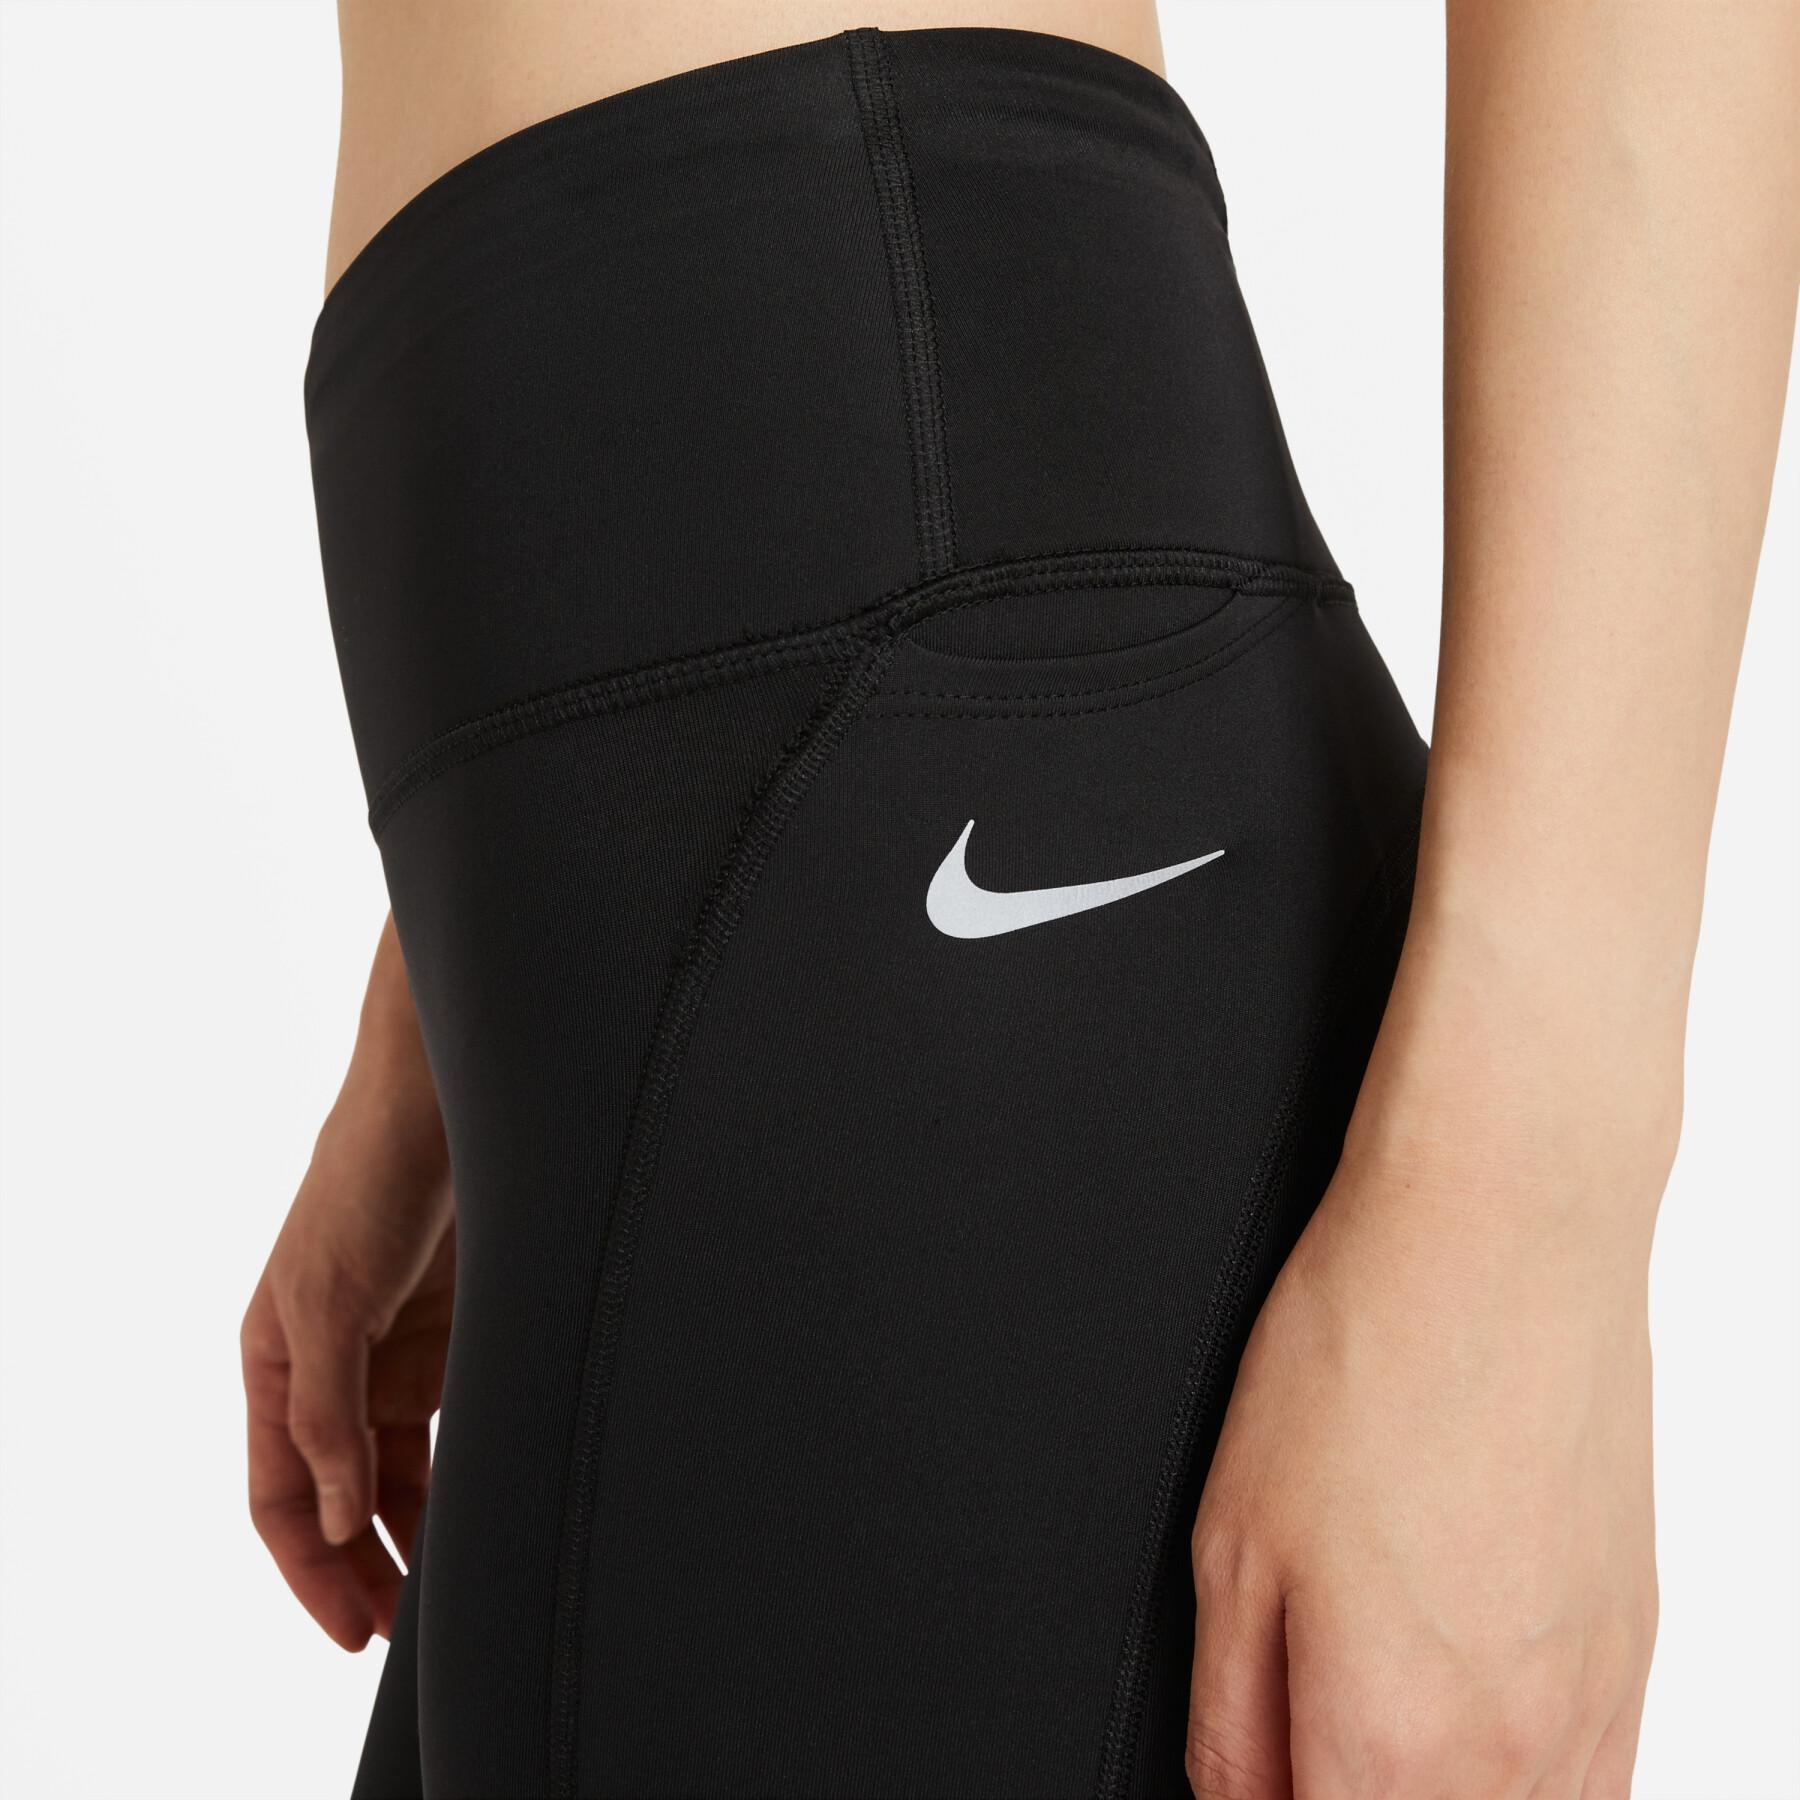 Pantalon femme Nike Epic Fast